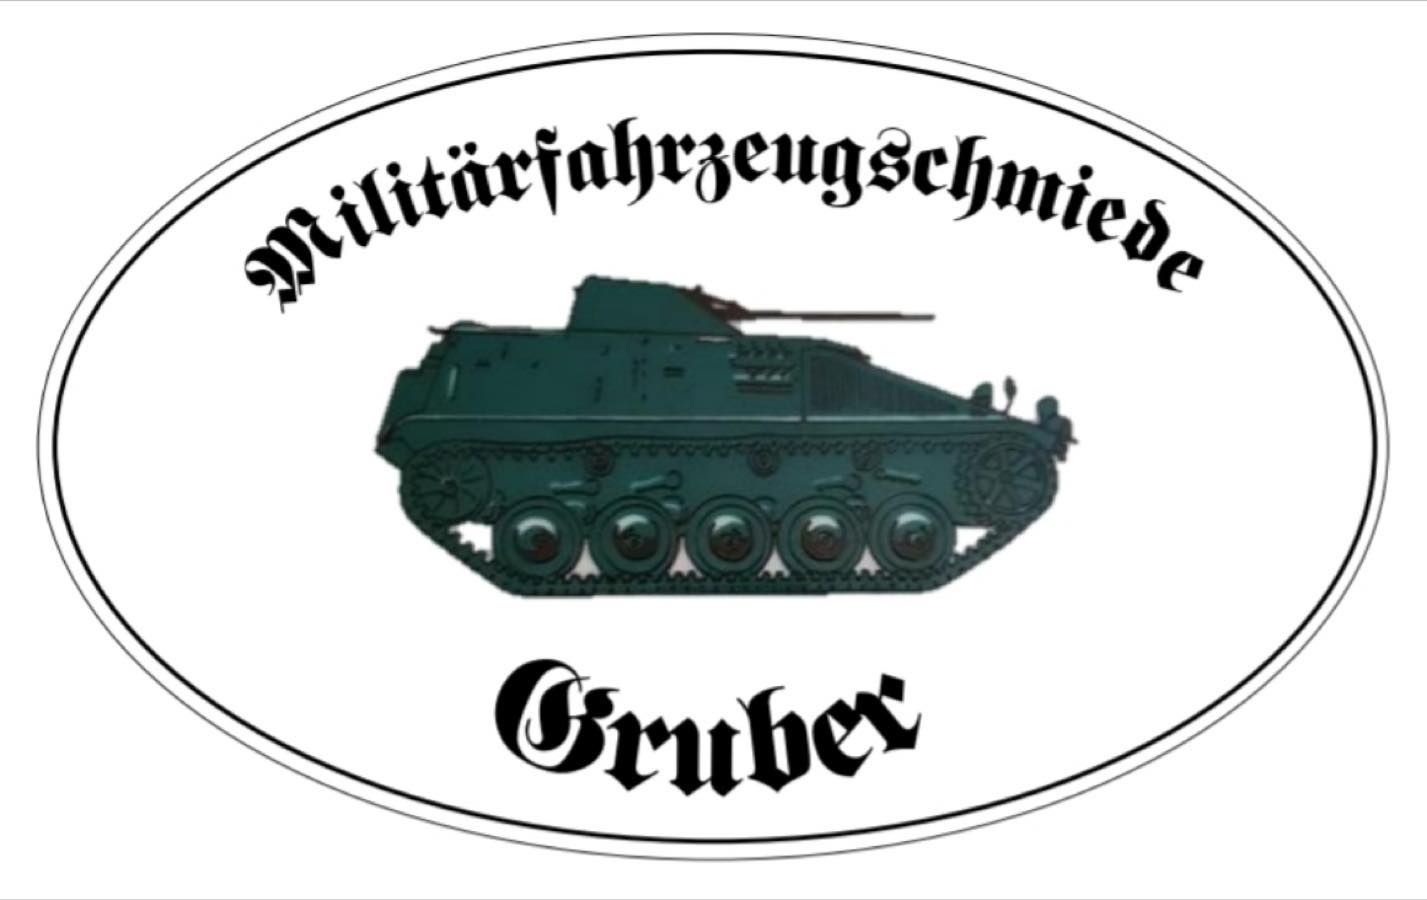 Militärfahrzeugschmiede Gruber logo